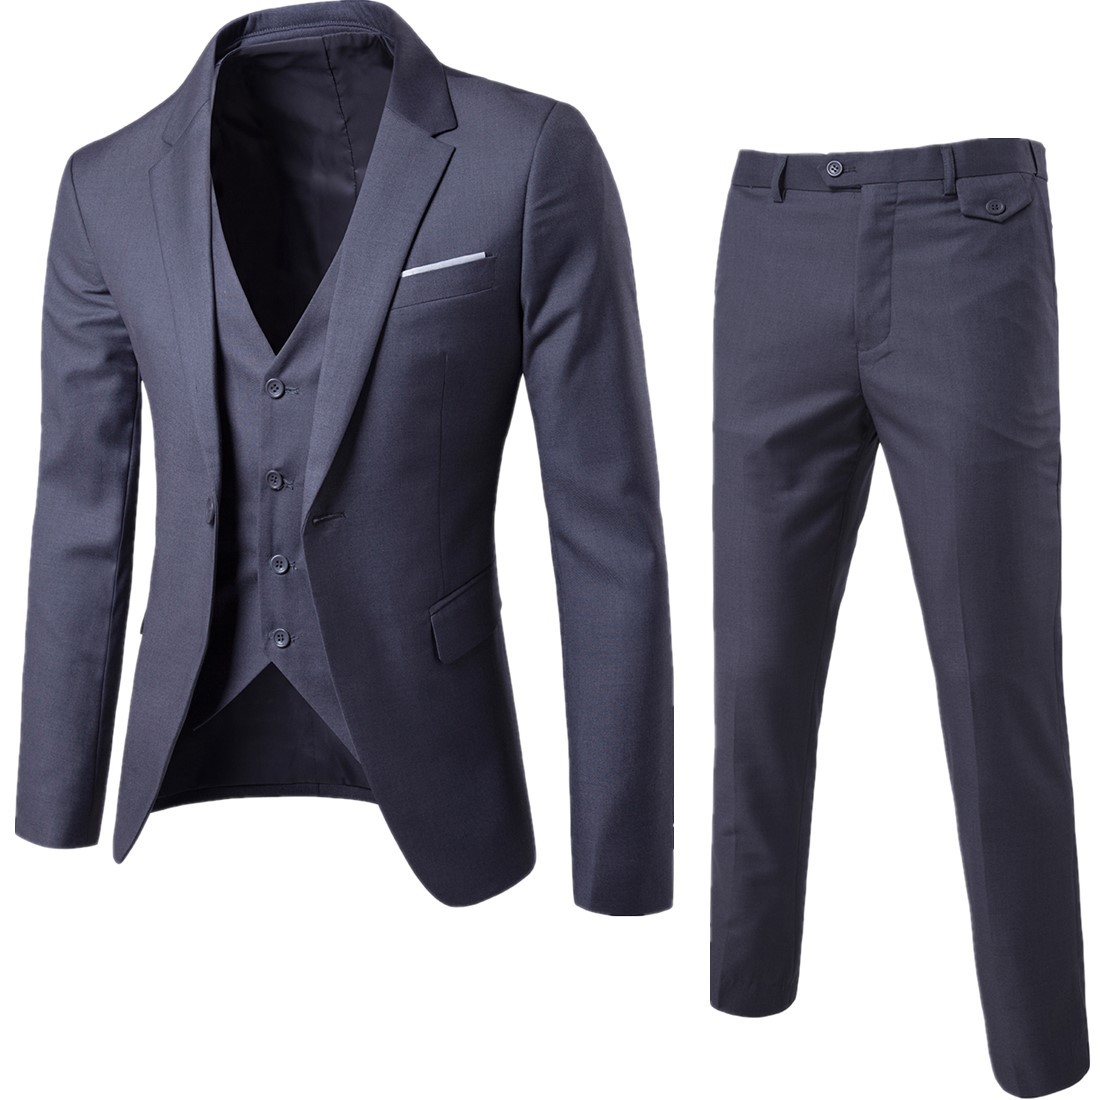 New men's three piece suit suit men's suit Korean slim fit leisure bridegroom and best man wedding dress trend